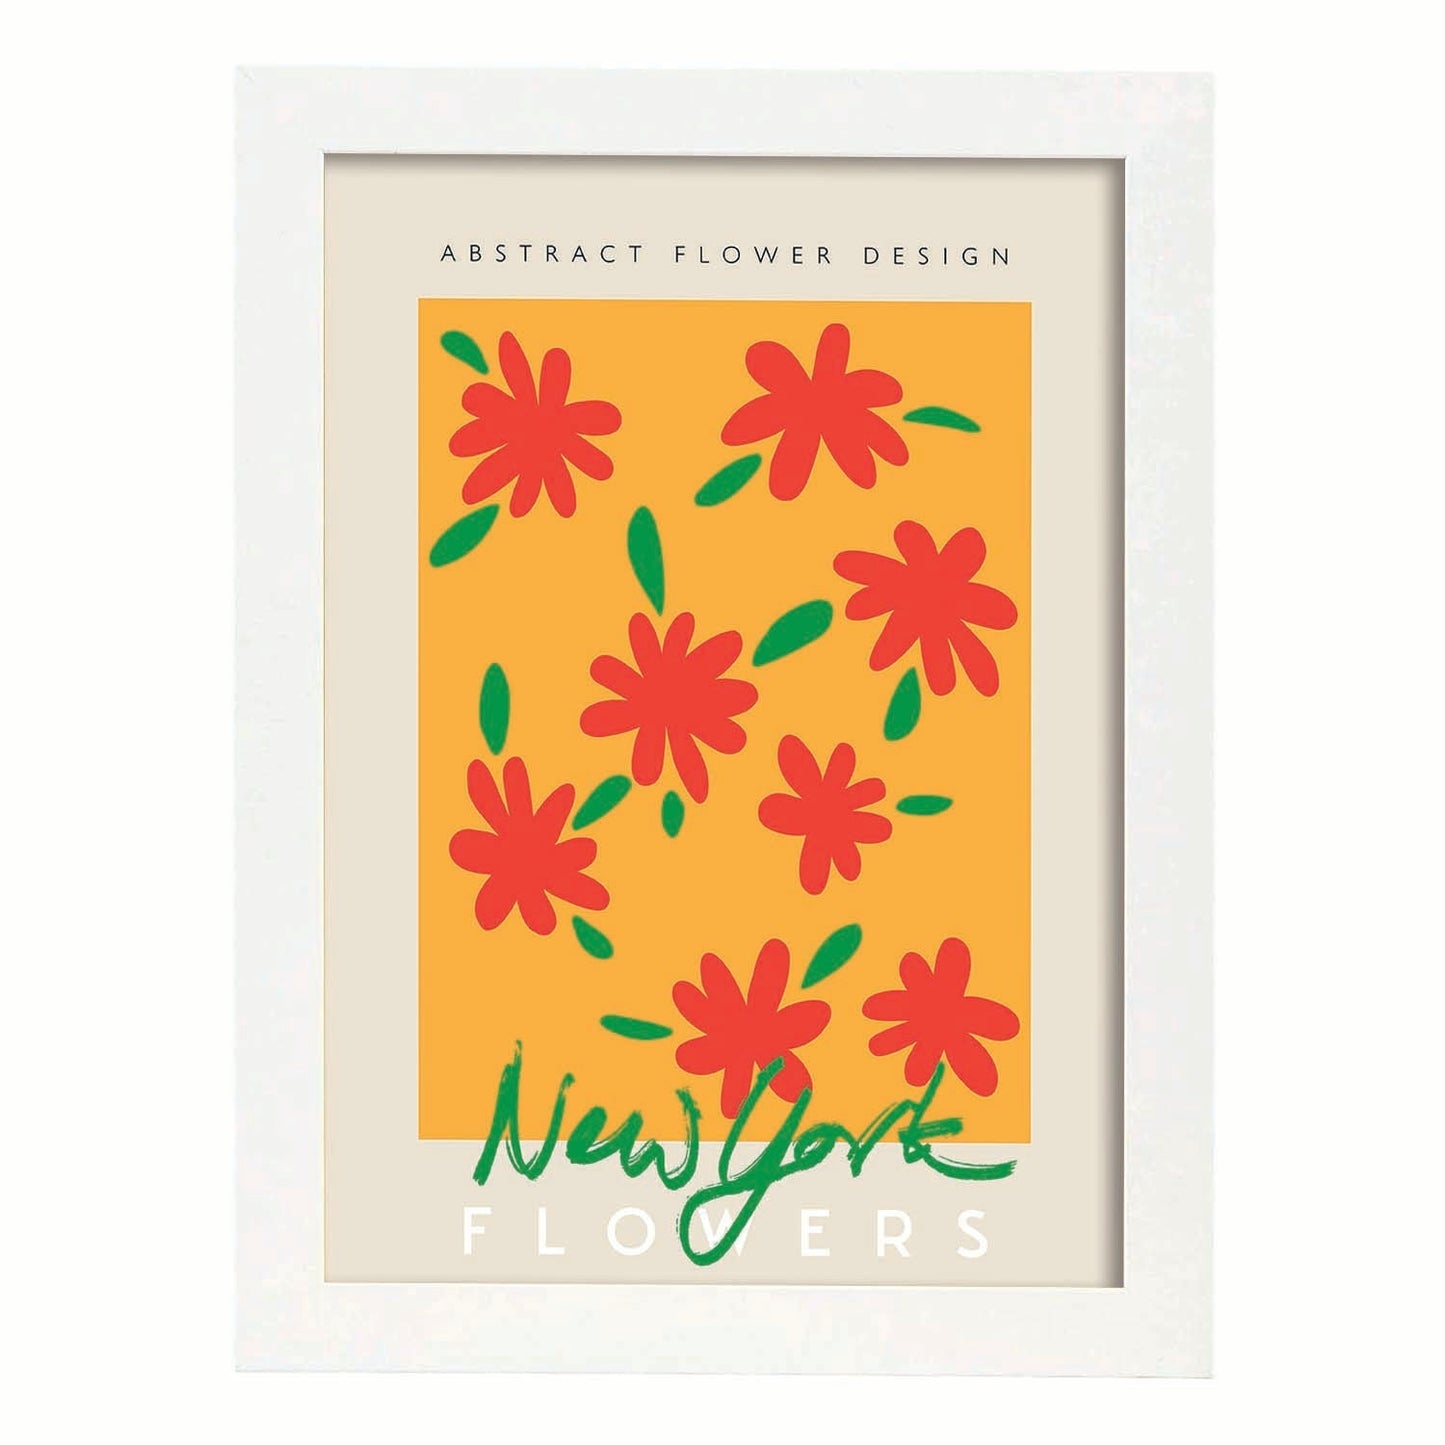 Lamina artistica decorativa con ilustración de Flor abstracta diseño de flores de Nueva York-Artwork-Nacnic-A4-Marco Blanco-Nacnic Estudio SL